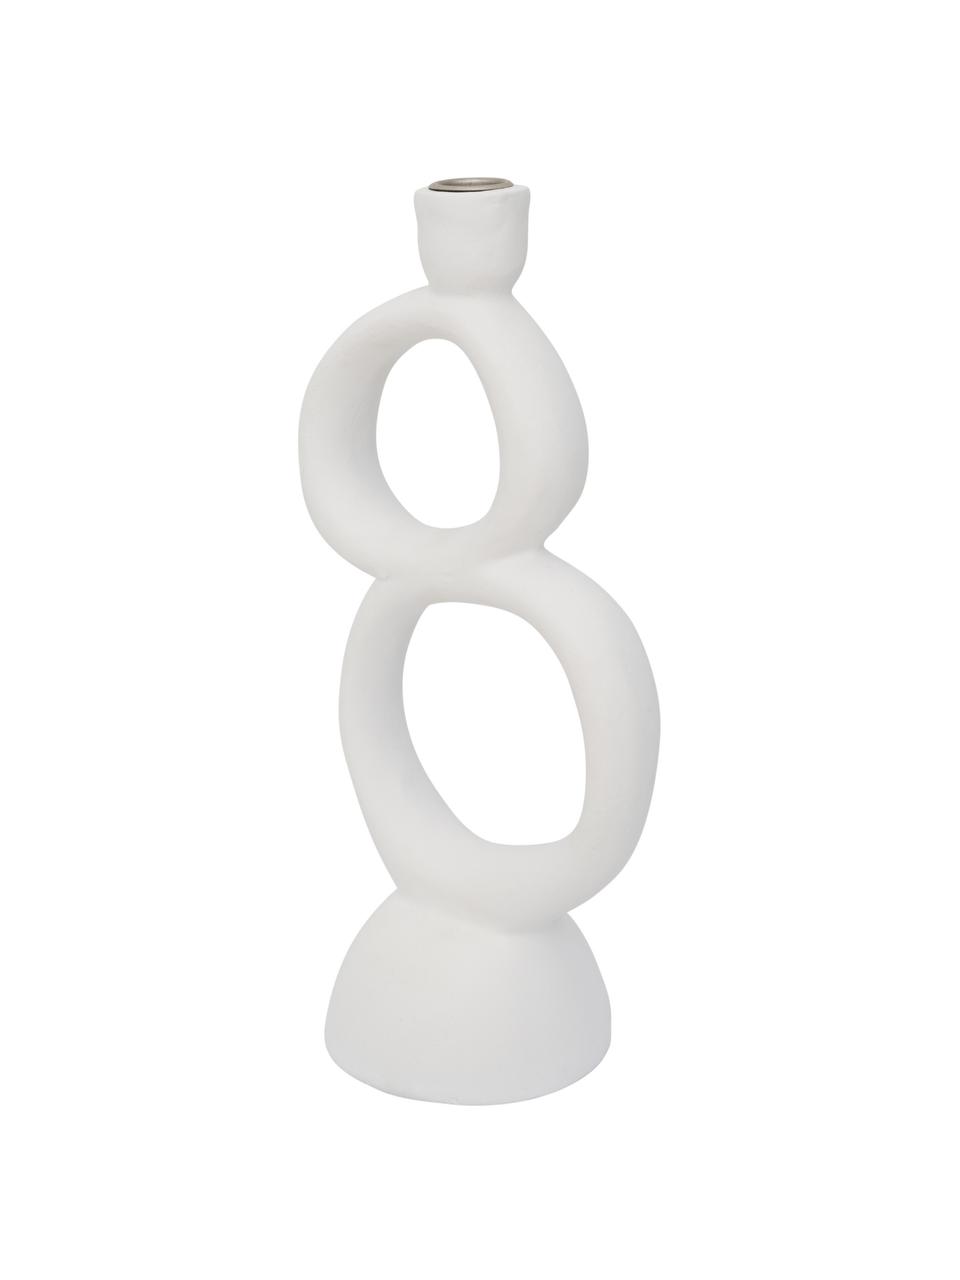 Kerzenhalter Rough Sophistication in Weiß, Ecomix
Ecomix ist eine umweltfreundliche Mischung aus recyceltem Papierzellstoff, natürlichem Gummi und Kreidepulver, Weiß, B 14 x H 33 cm